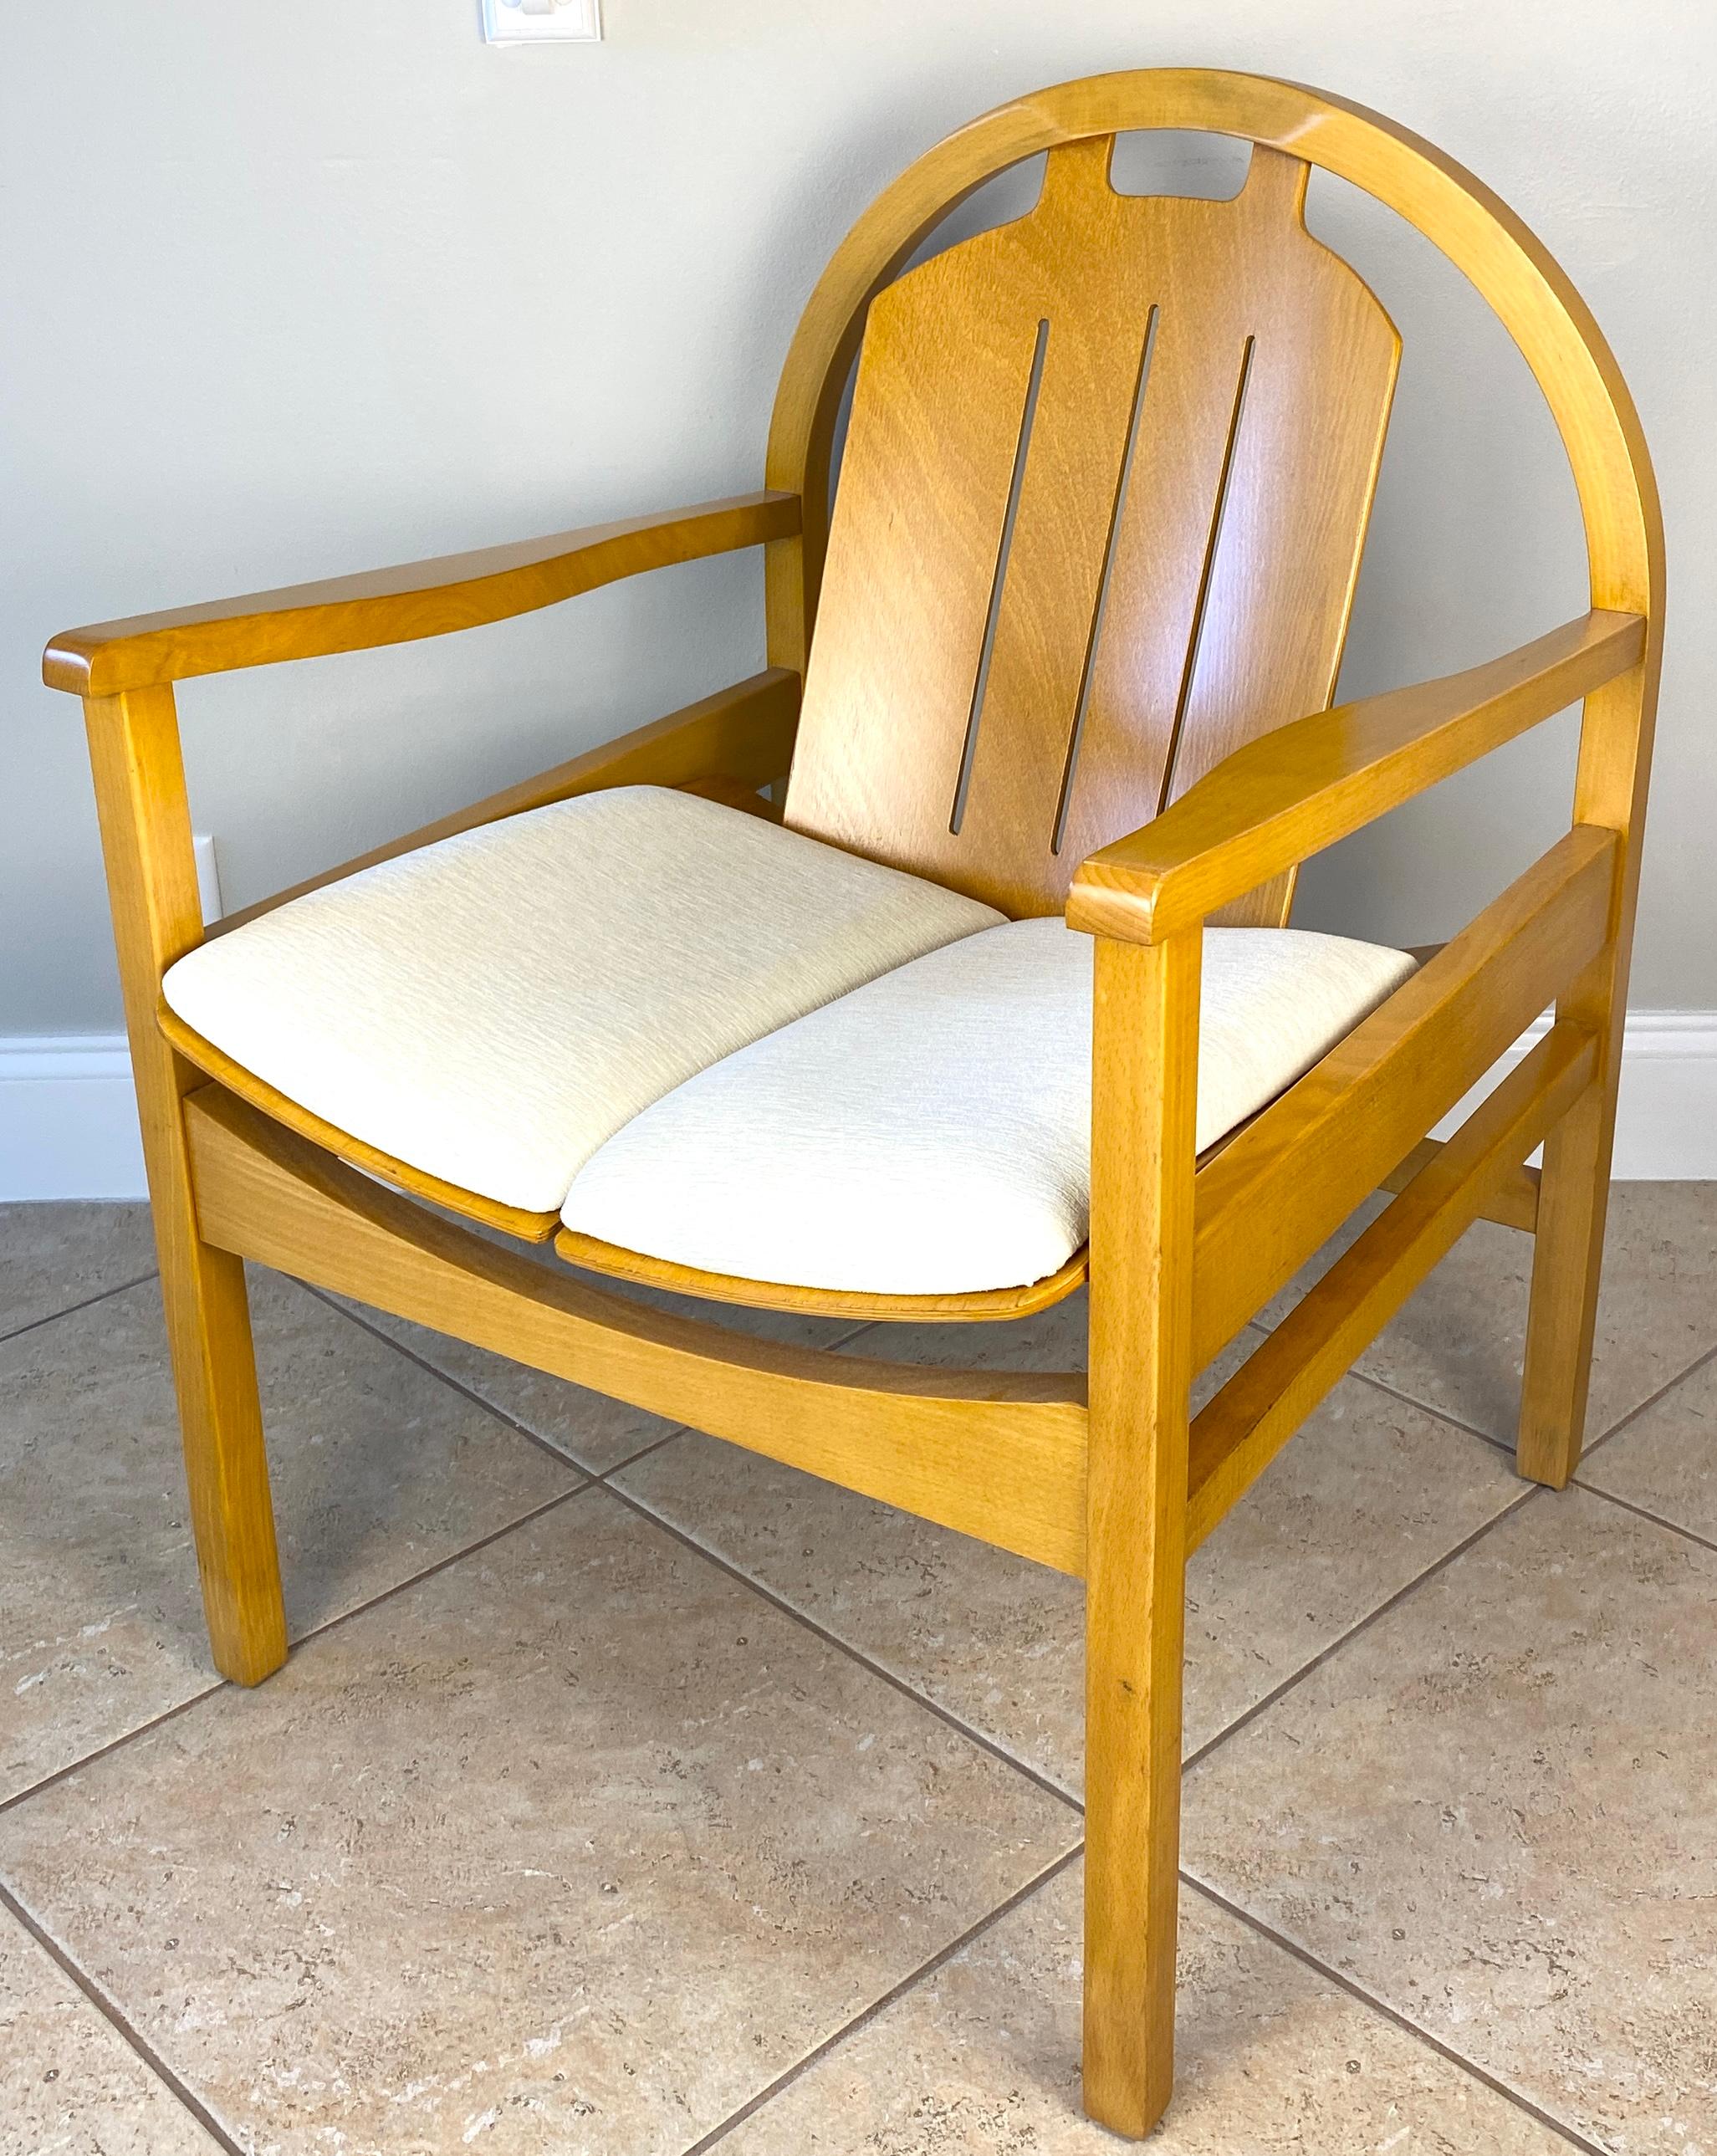 Die klaren Linien und skulpturalen Formen des Mid-Century-Modern-Designs prägen dieses elegante Paar Baumann Argos Lounge-Sessel, die um 1970 in Frankreich gefertigt wurden und zeitlose Raffinesse ausstrahlen. Die fachmännisch mit Klarlack